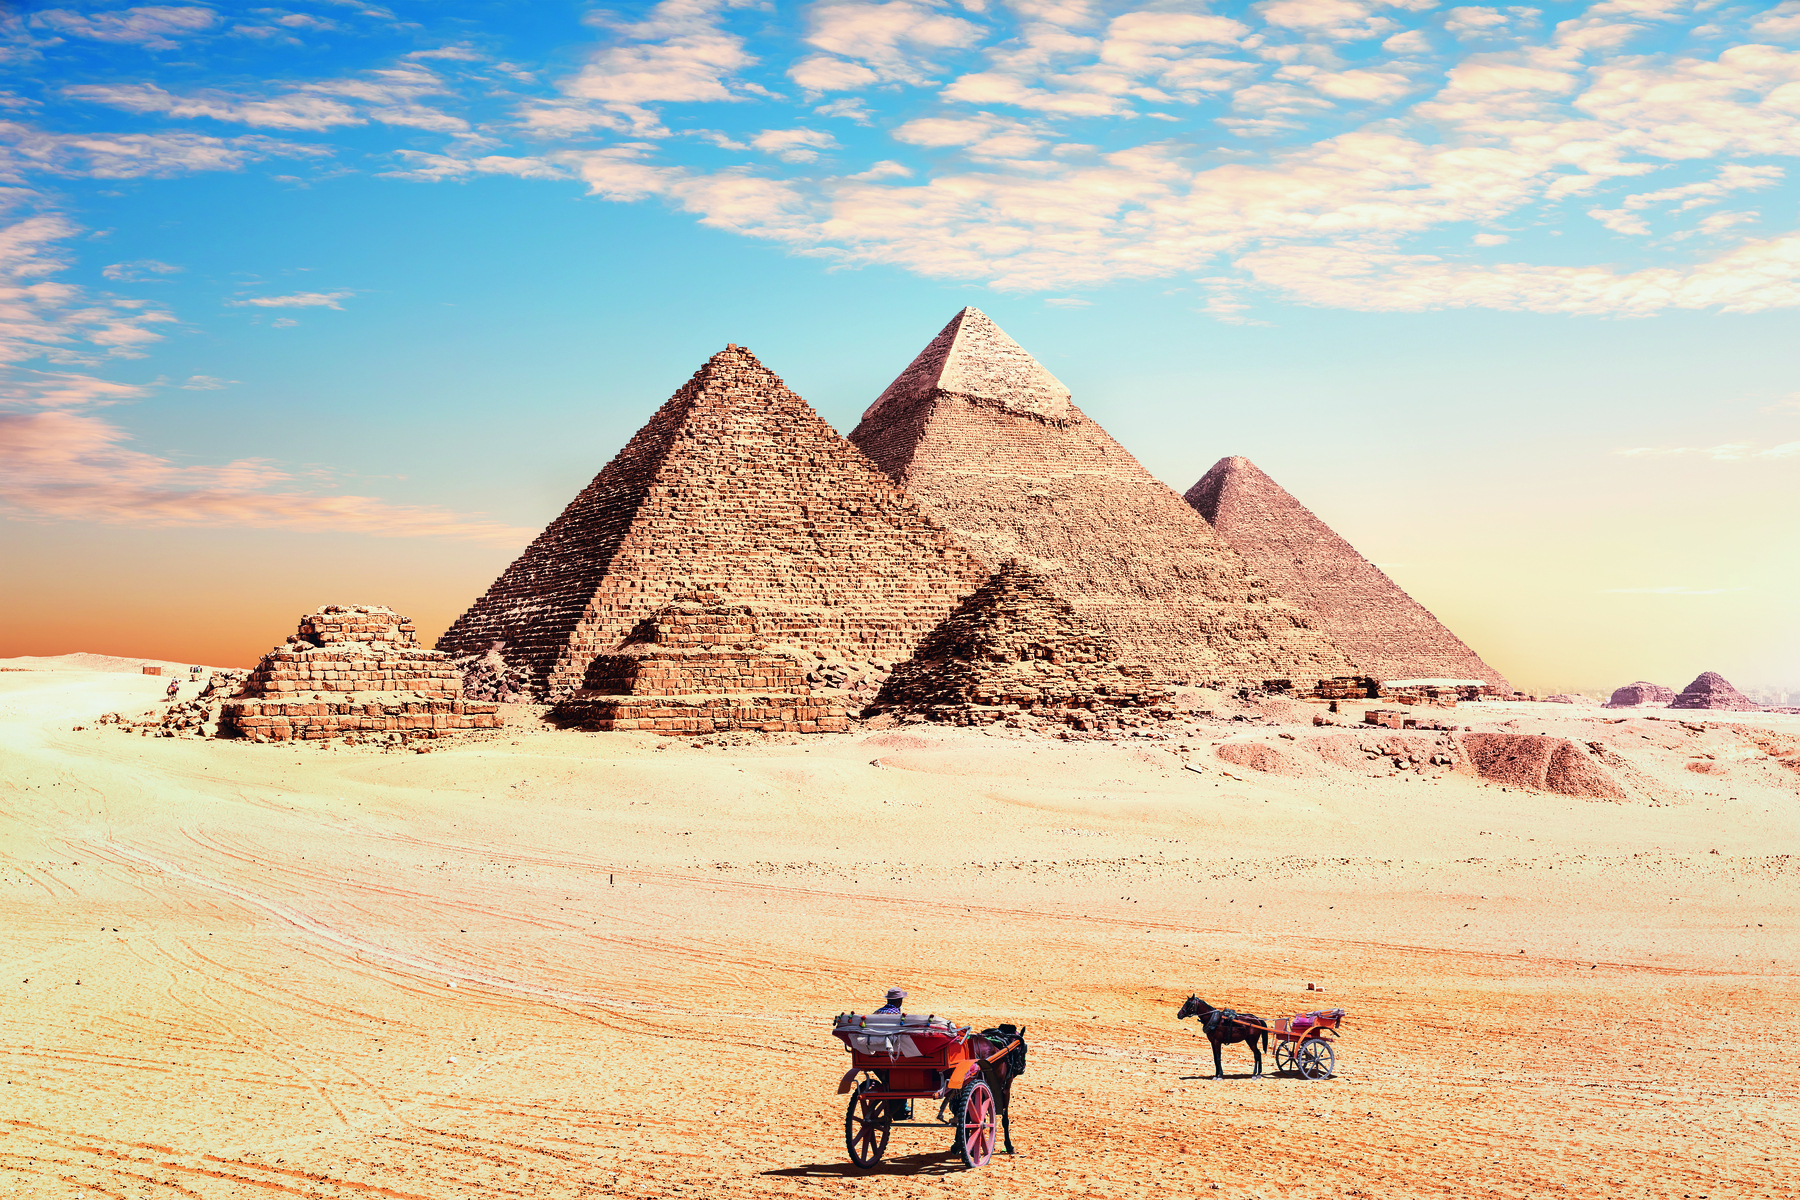 Fotografia. Vista de três grandes pirâmides e três pirâmides menores, com bases quadradas e ápice triangular, sobre um solo arenoso. À frente, duas carroças guiadas por cavalos.